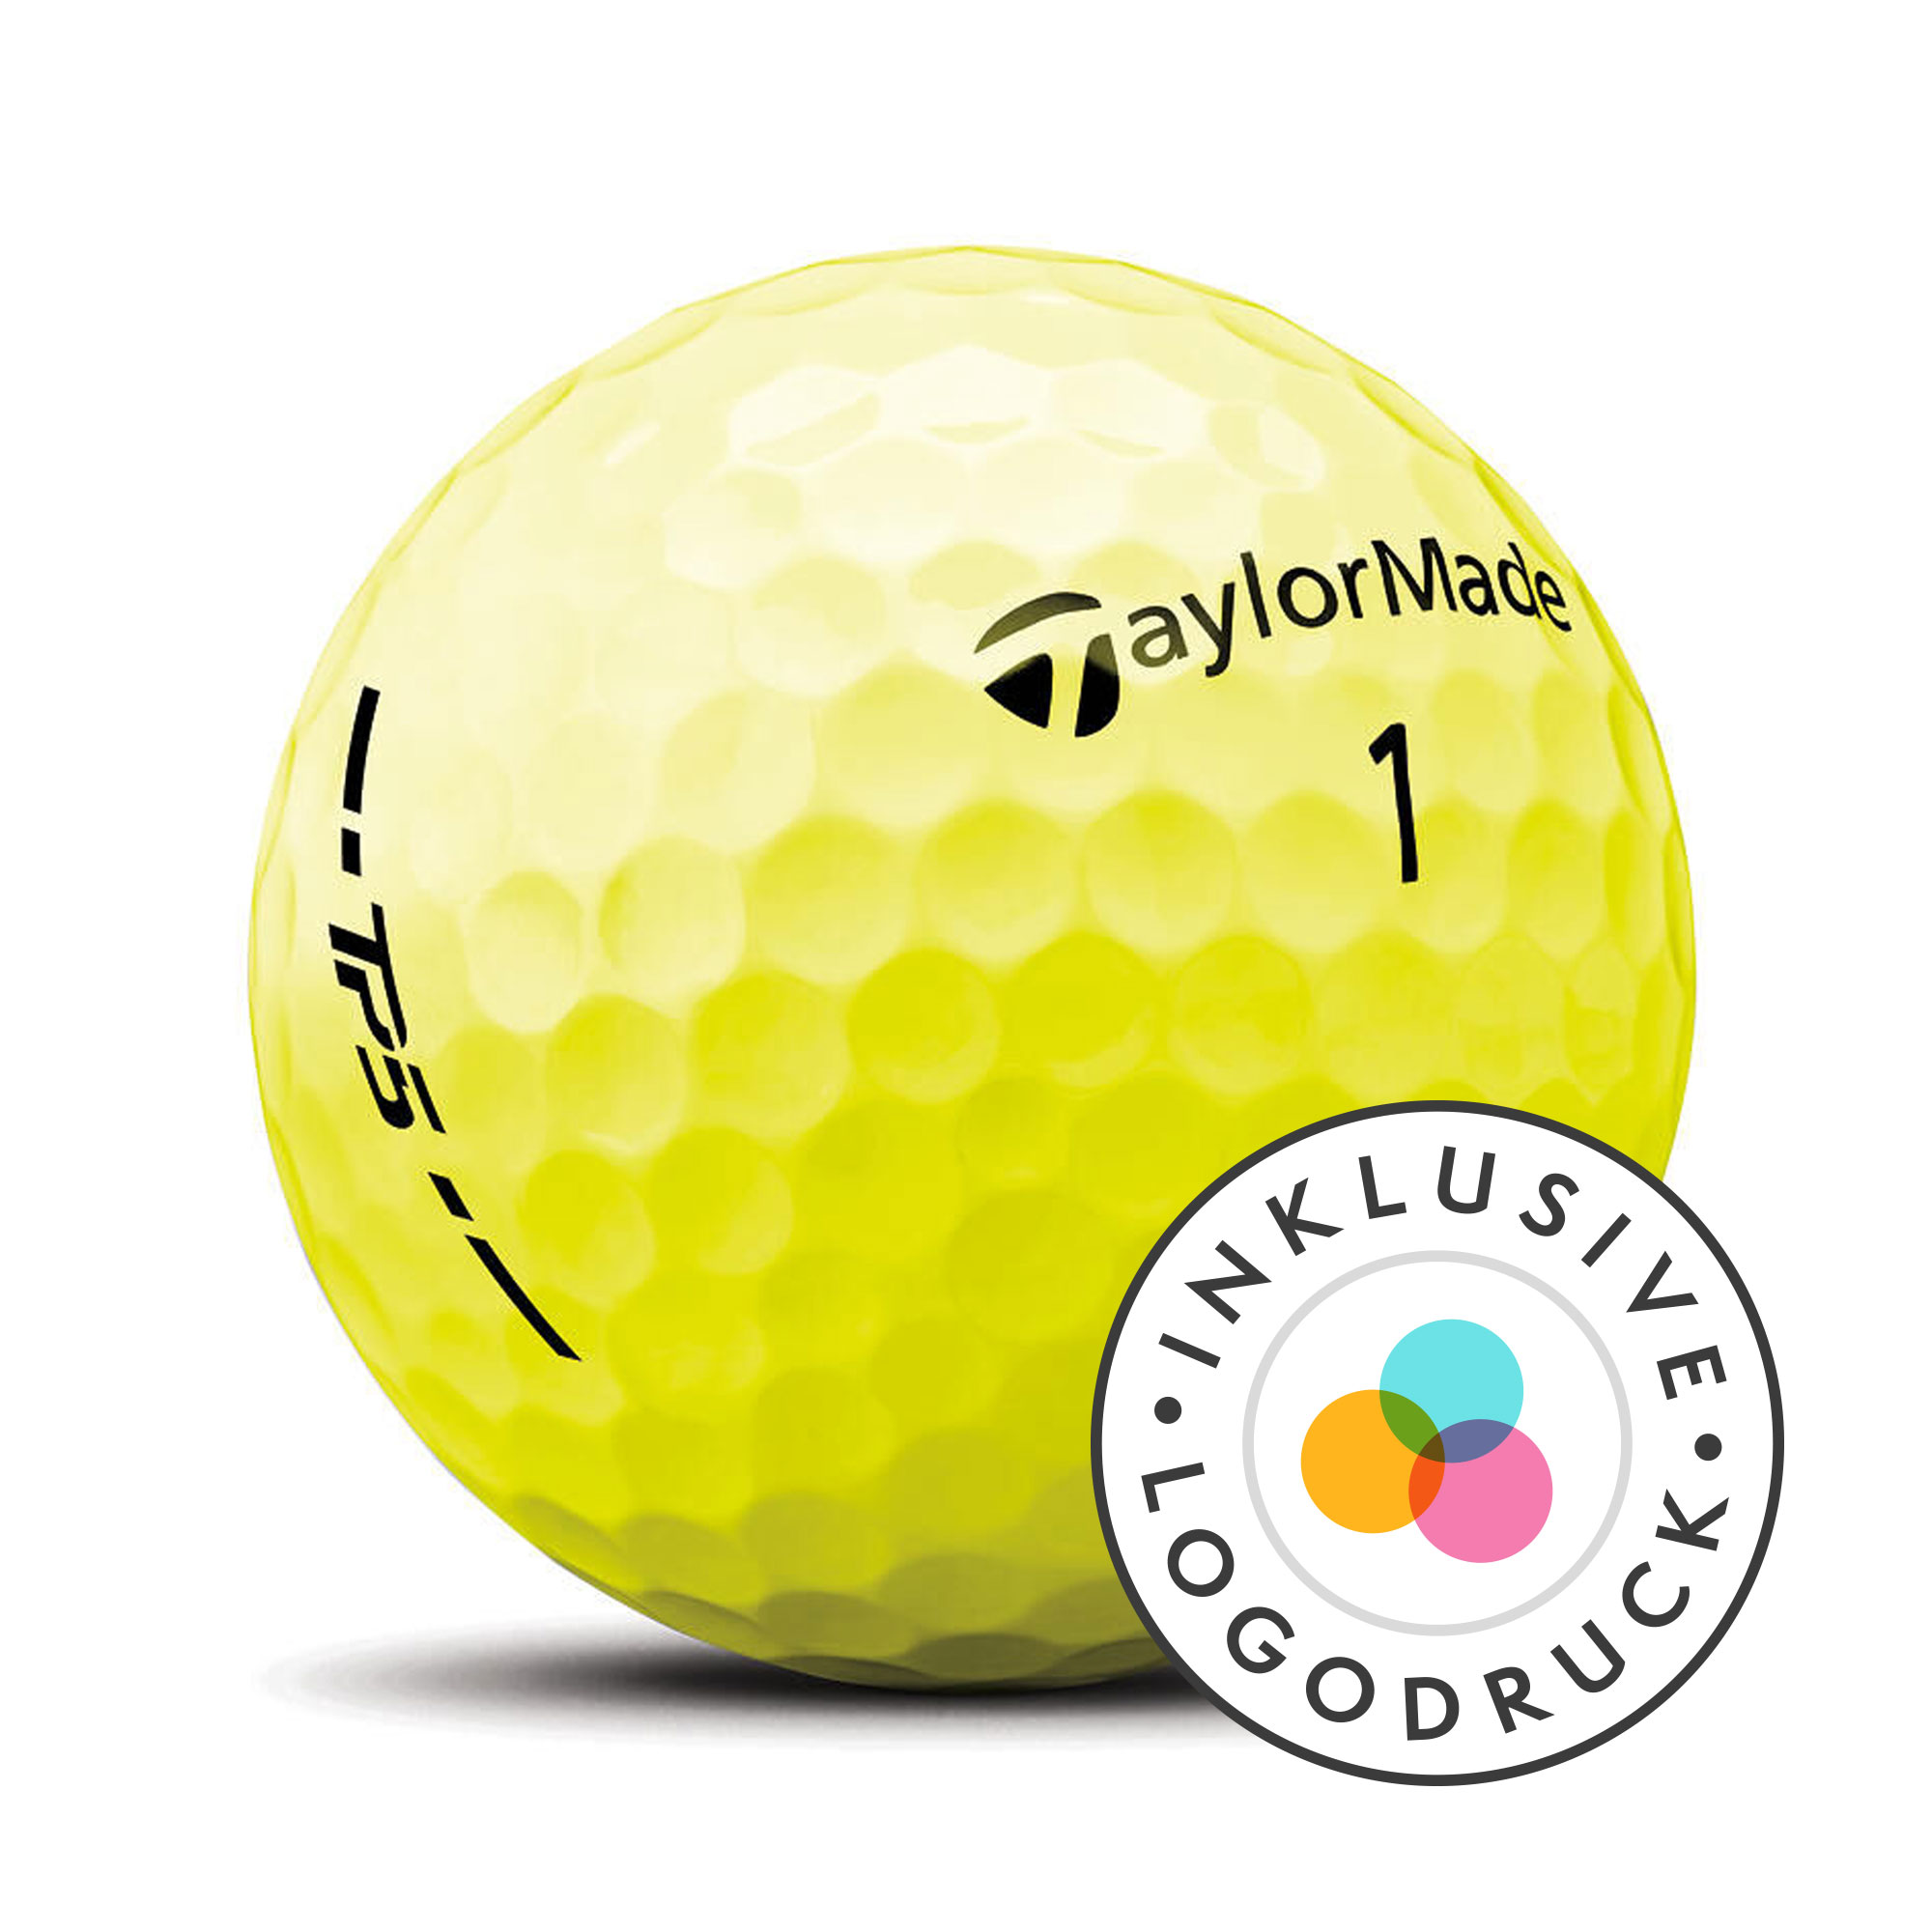 TaylorMade TP5 Golfbälle bedruckt, gelb (VPE à 12 Bälle)